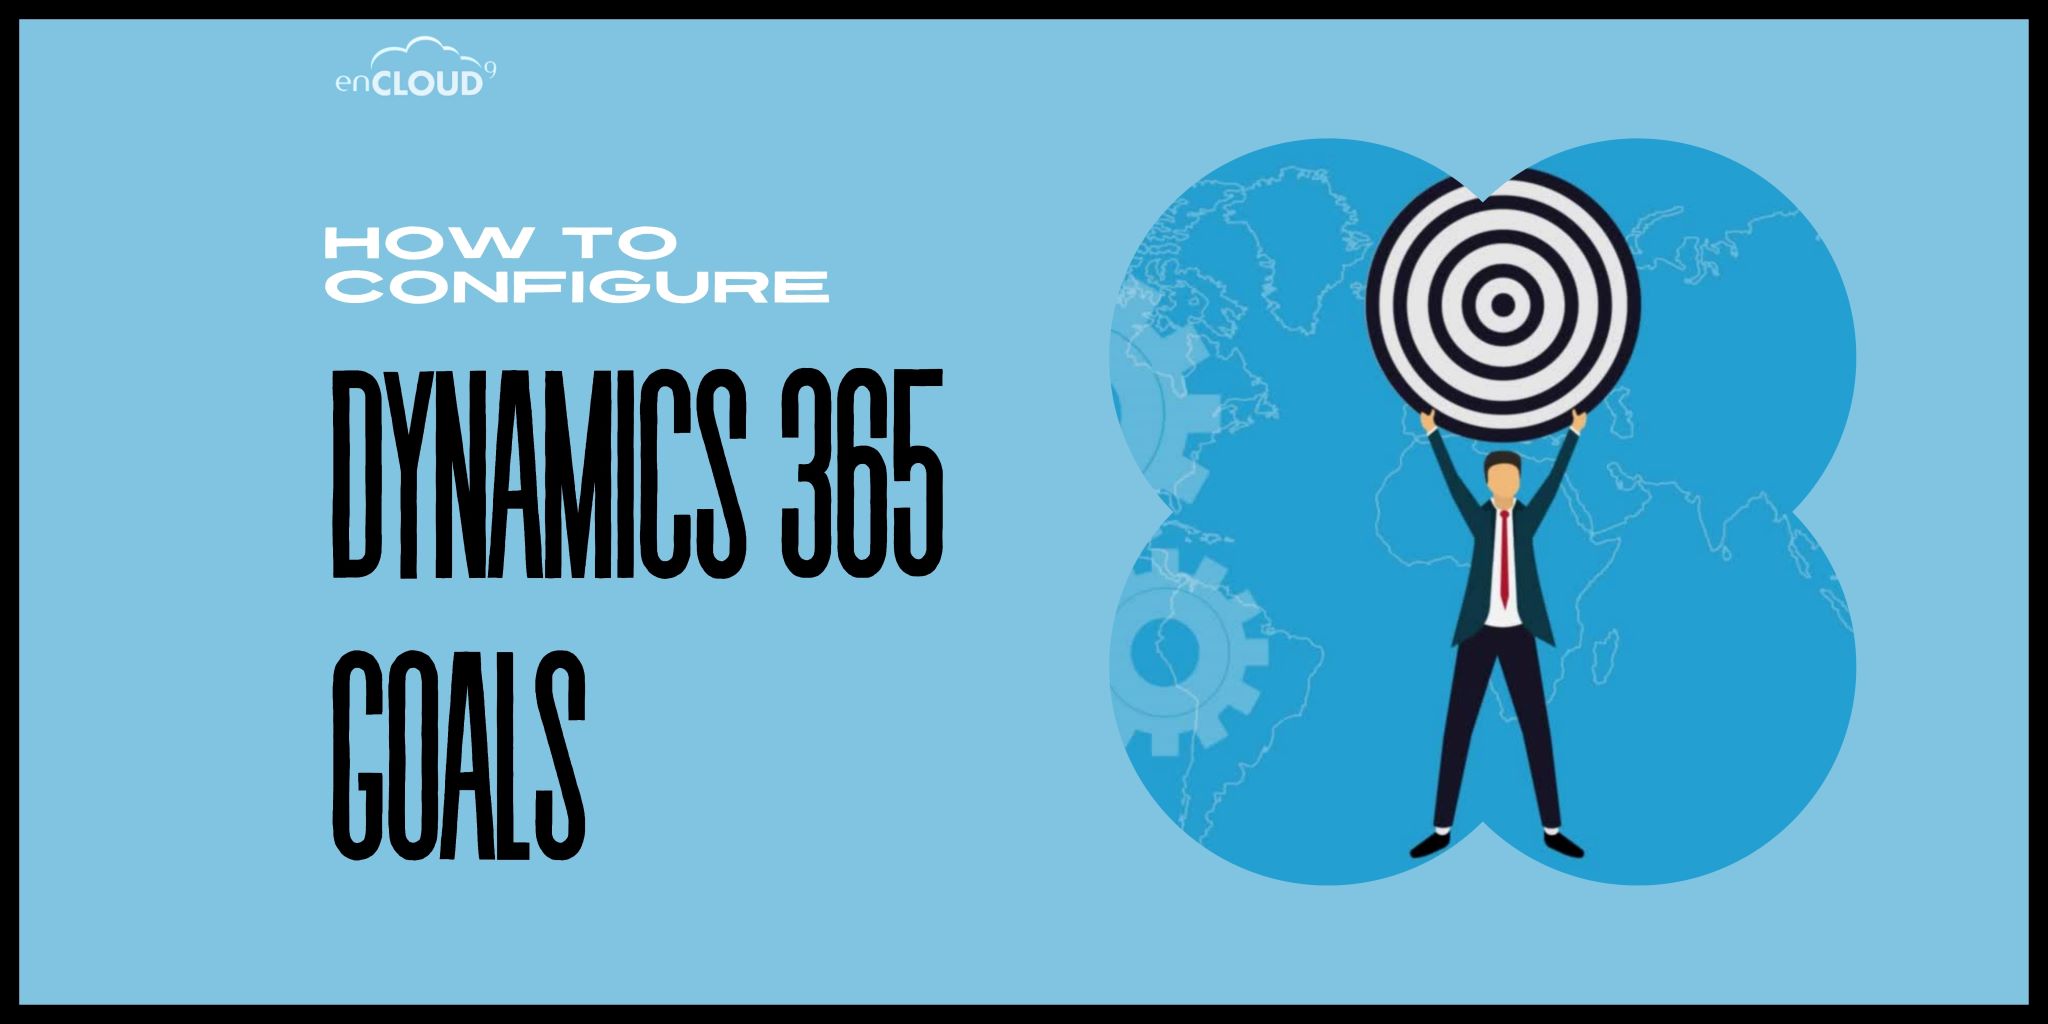 Dynamics 365 Goals | enCloud9